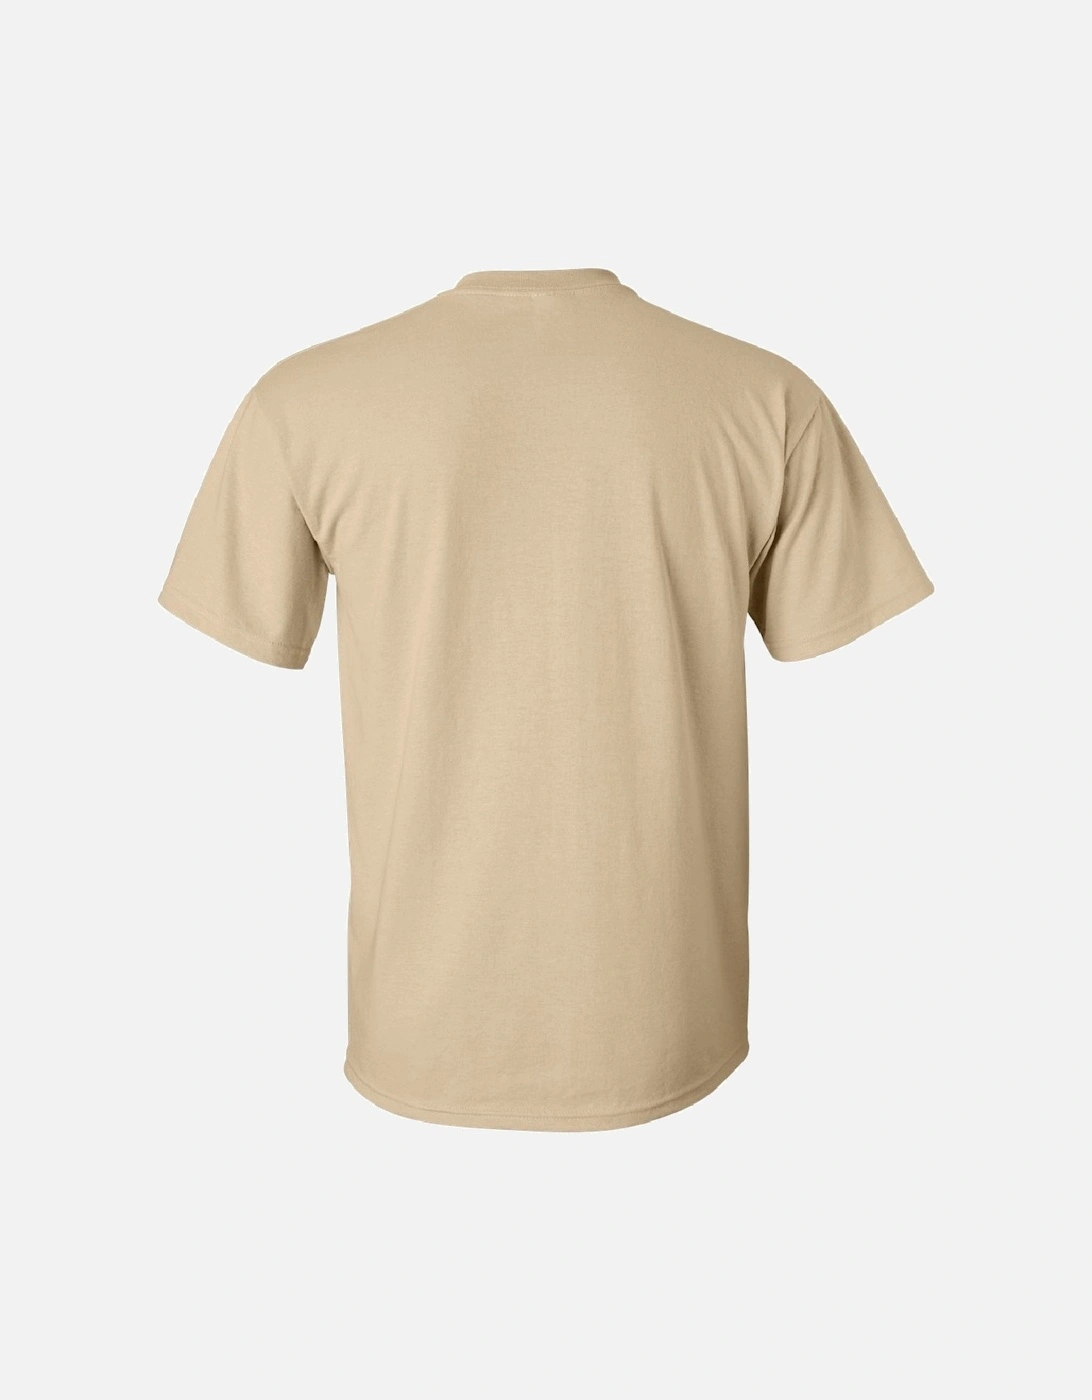 Mens Ultra Cotton Short Sleeve T-Shirt